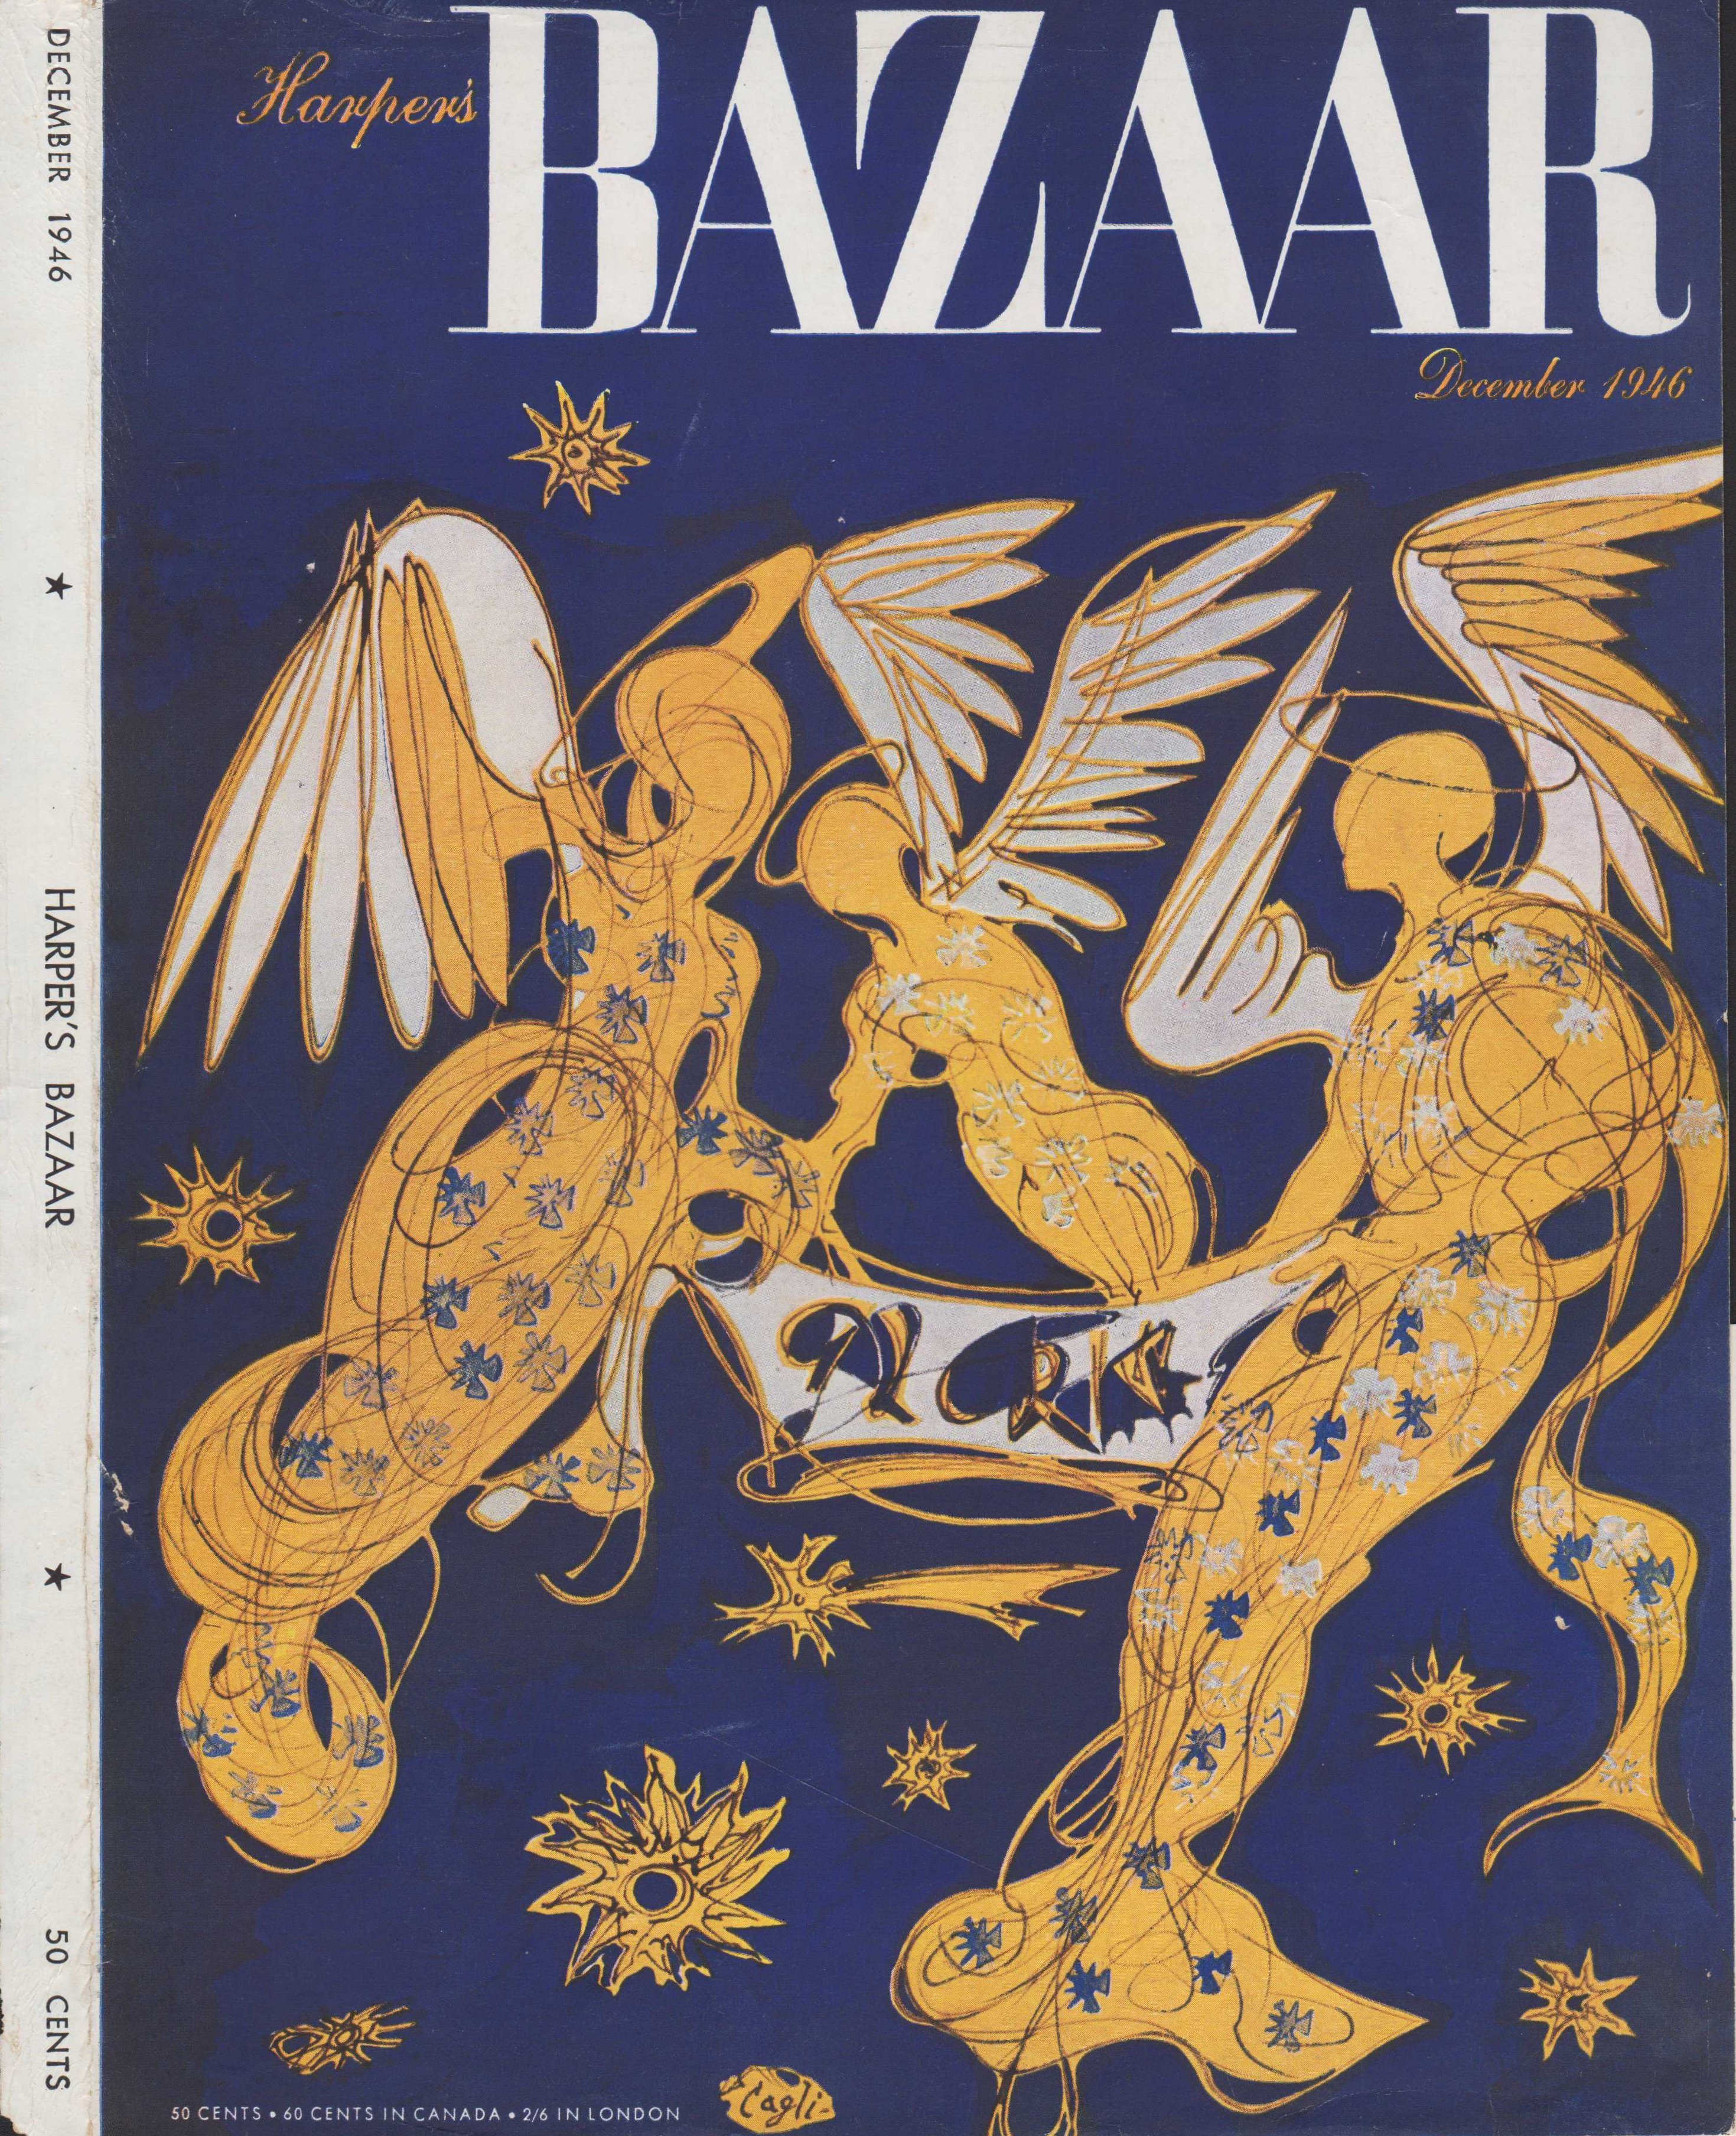 Image for Harper's Bazar (Harper's Bazaar) - December, 1946 - Cover Only